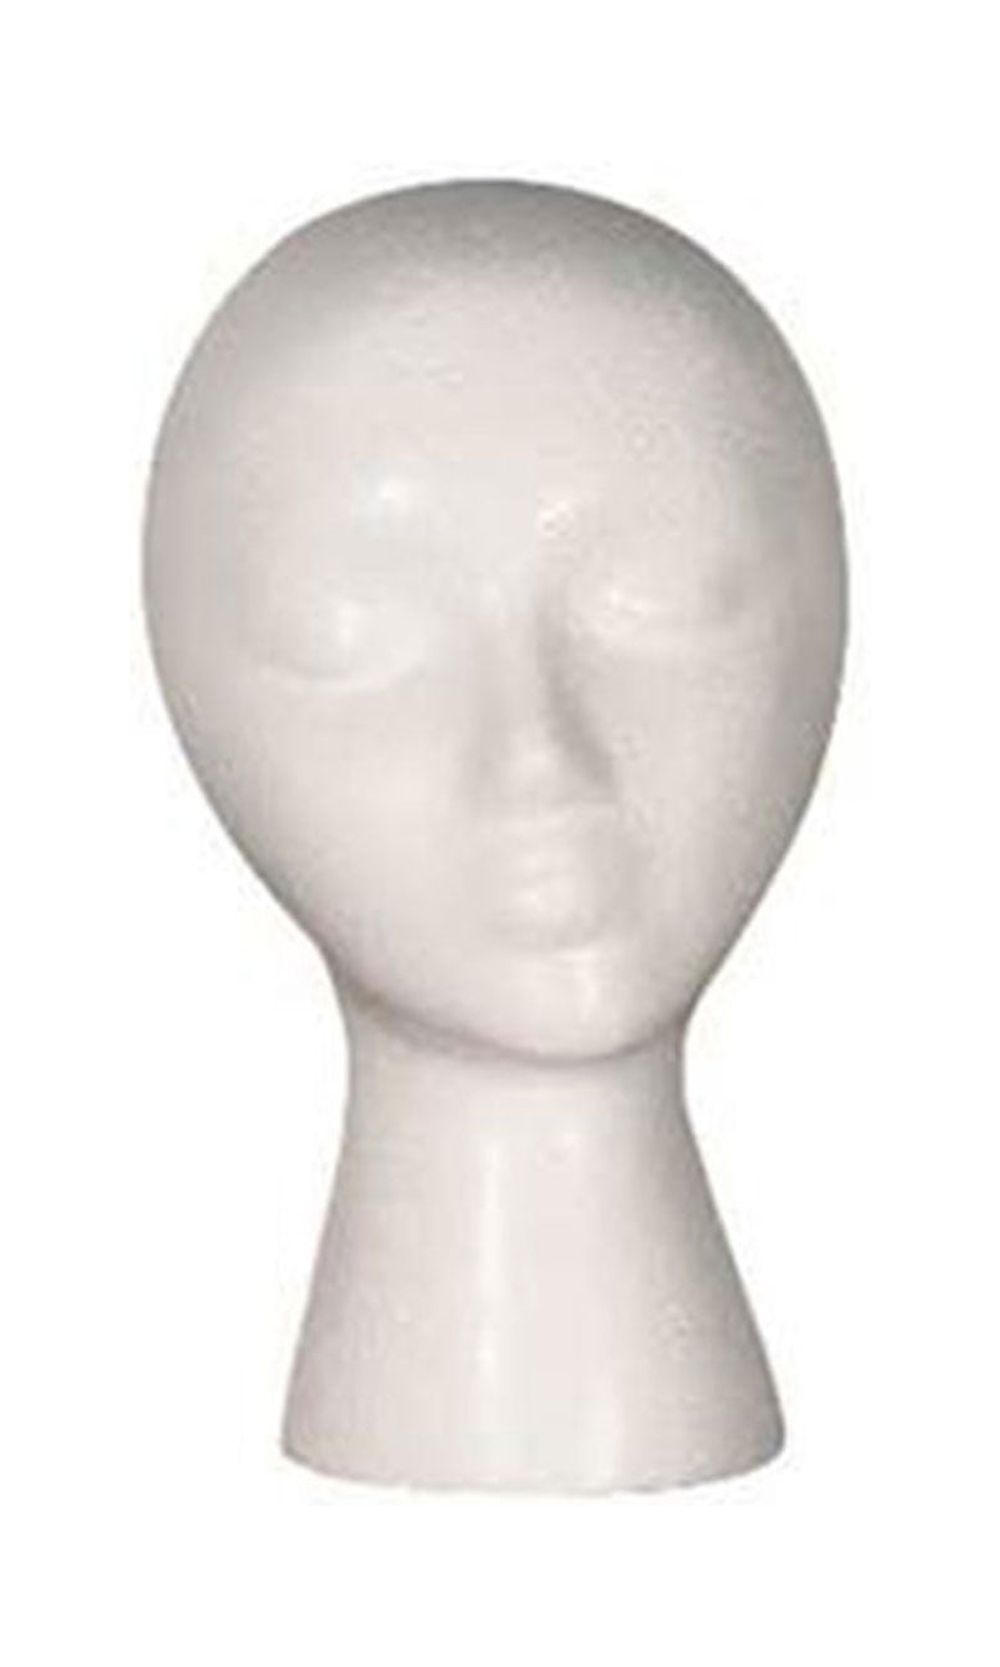 Female White Styrofoam Mannequin Head - 11 1/2 Height - Beauty Supply  Standard - Set of 3